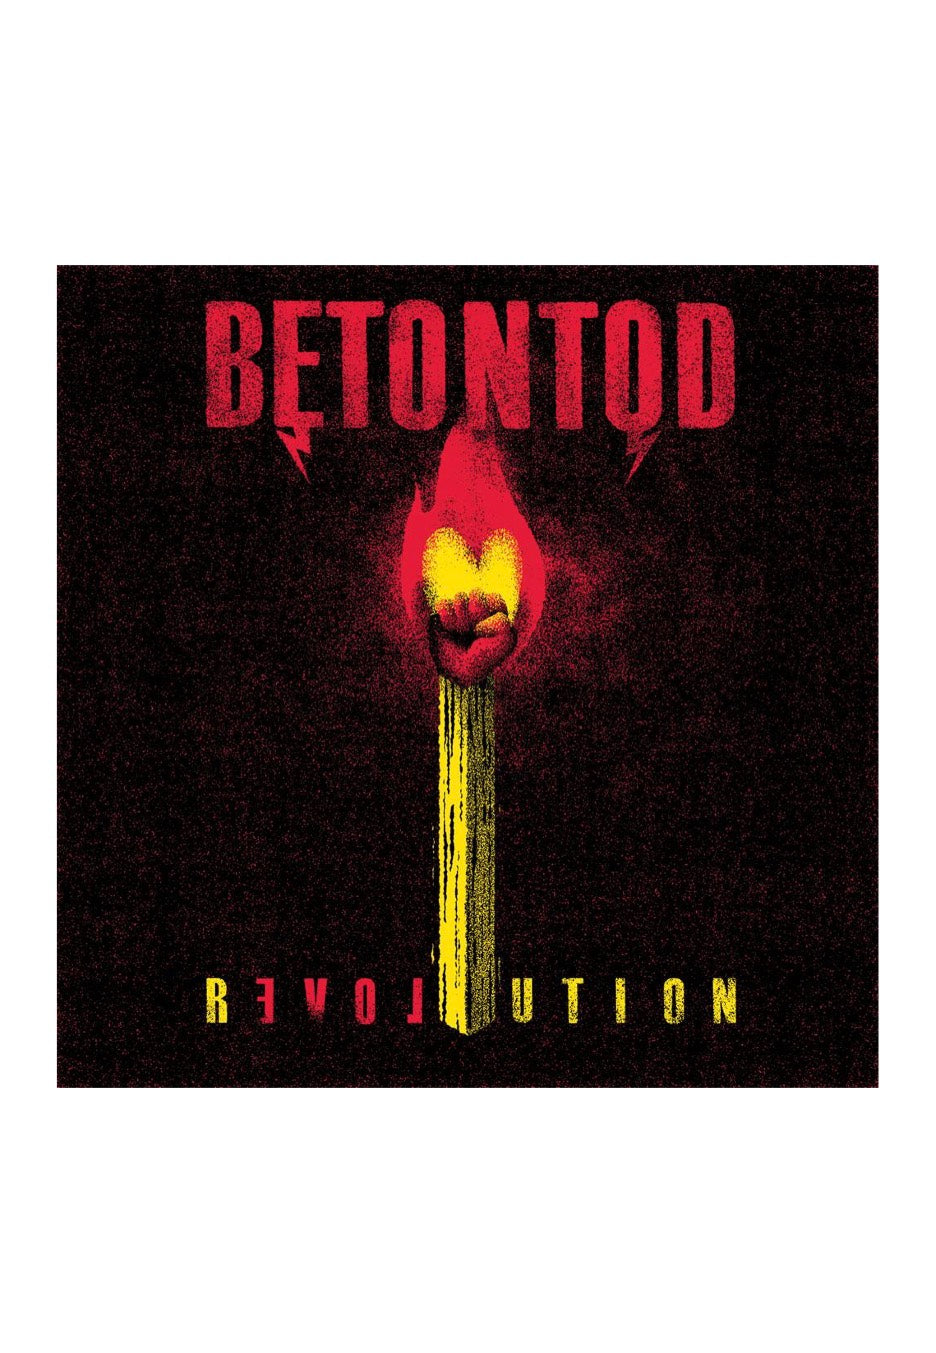 Betontod - Revolution - CD